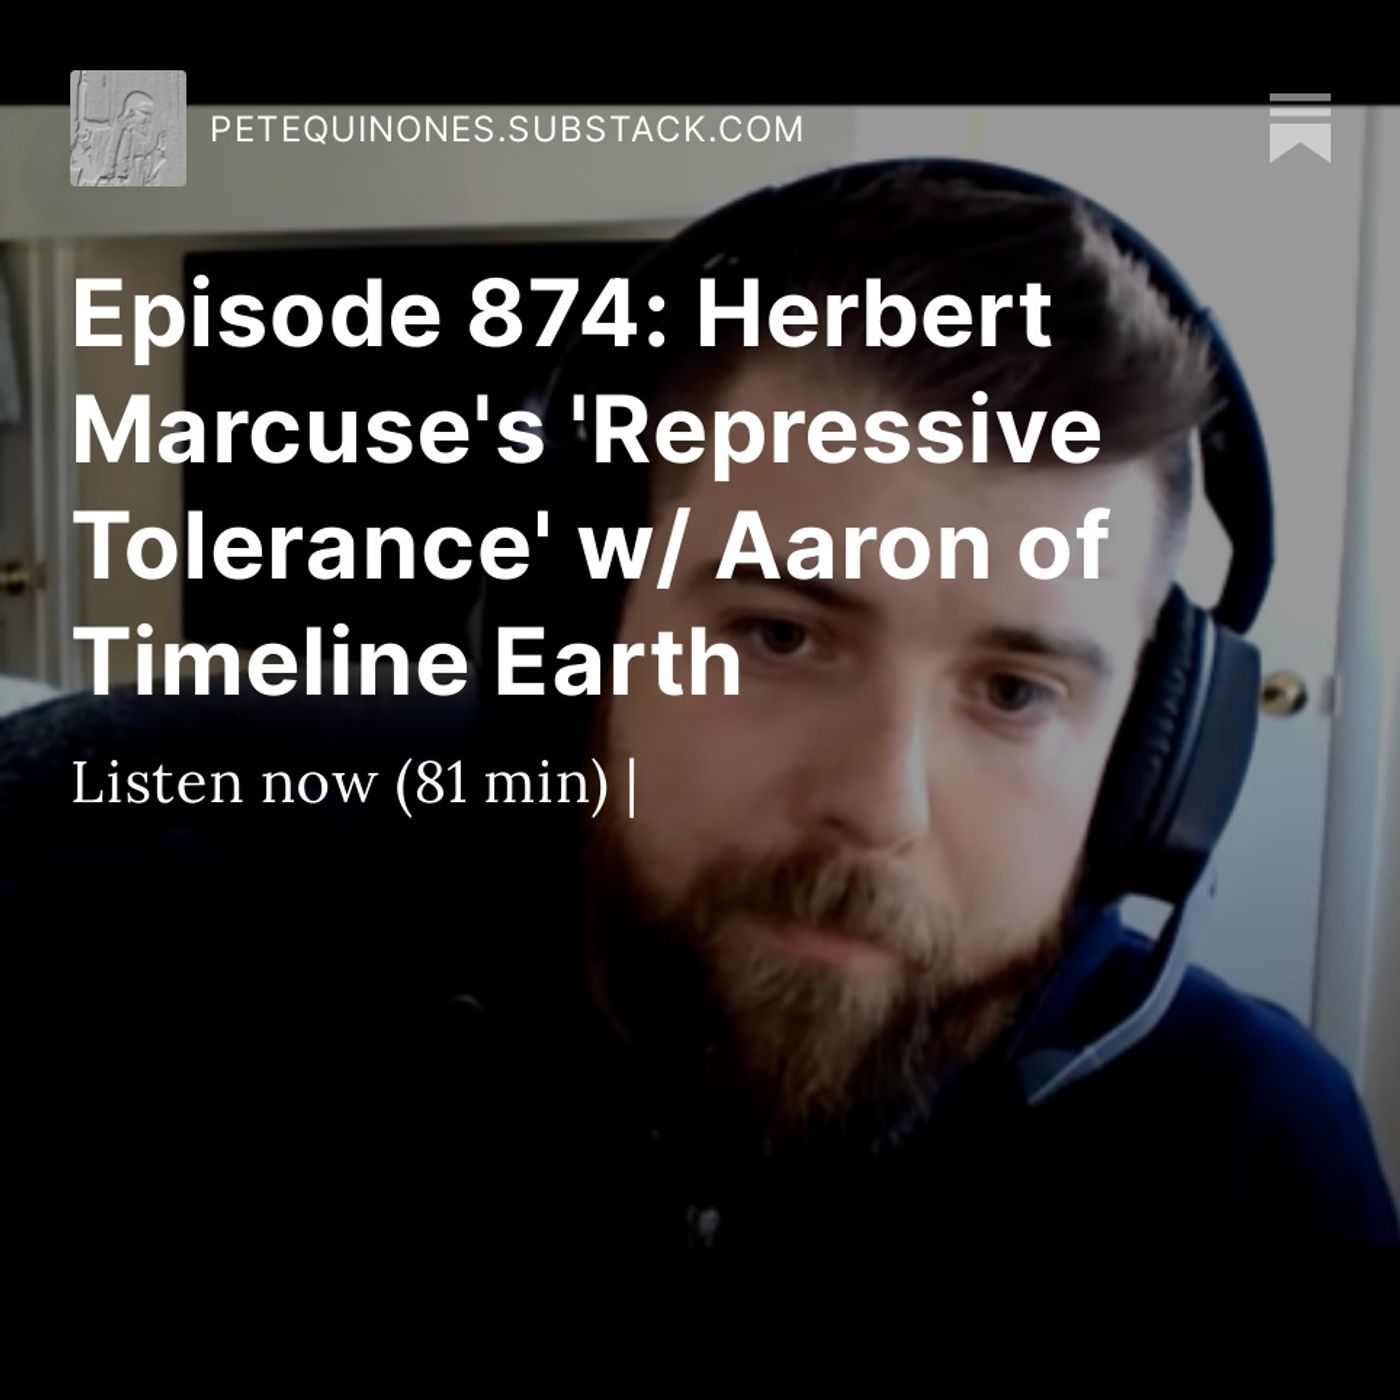 Episode 874: Herbert Marcuse's 'Repressive Tolerance' Pt. 1 w/ Aaron of Timeline Earth